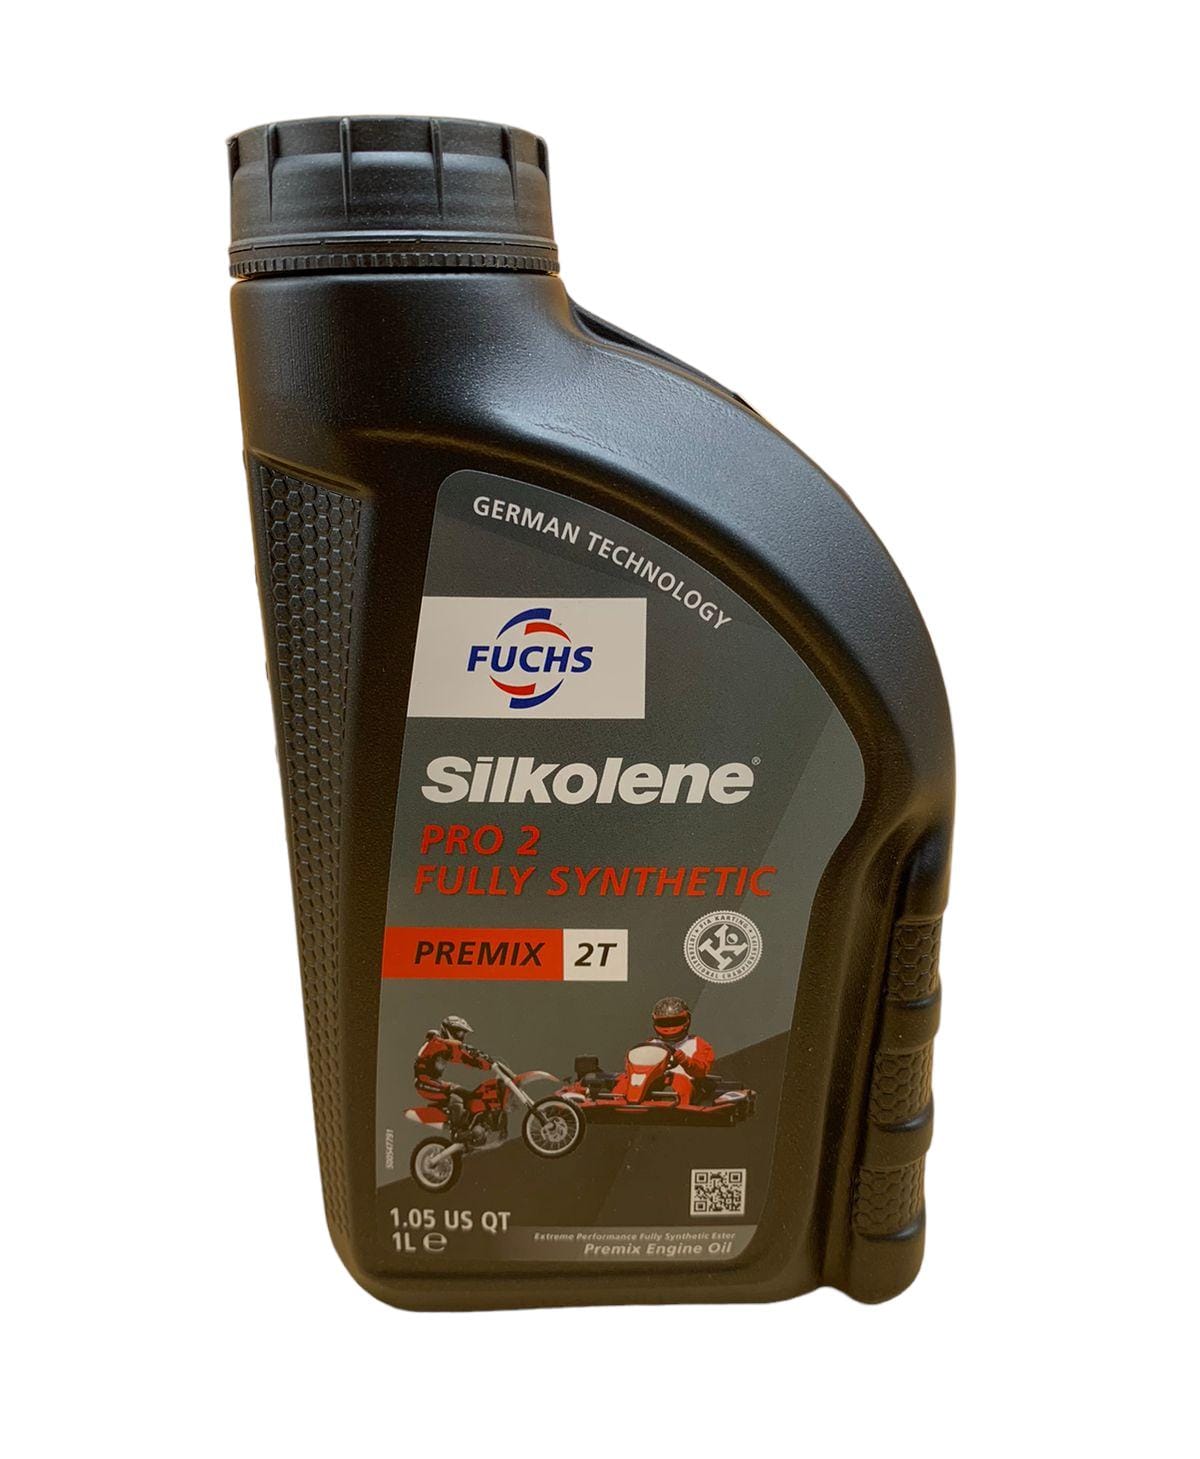 Aceite silkolene para mezcla gasolina 2t Coches, motos y motor de segunda  mano, ocasión y km0